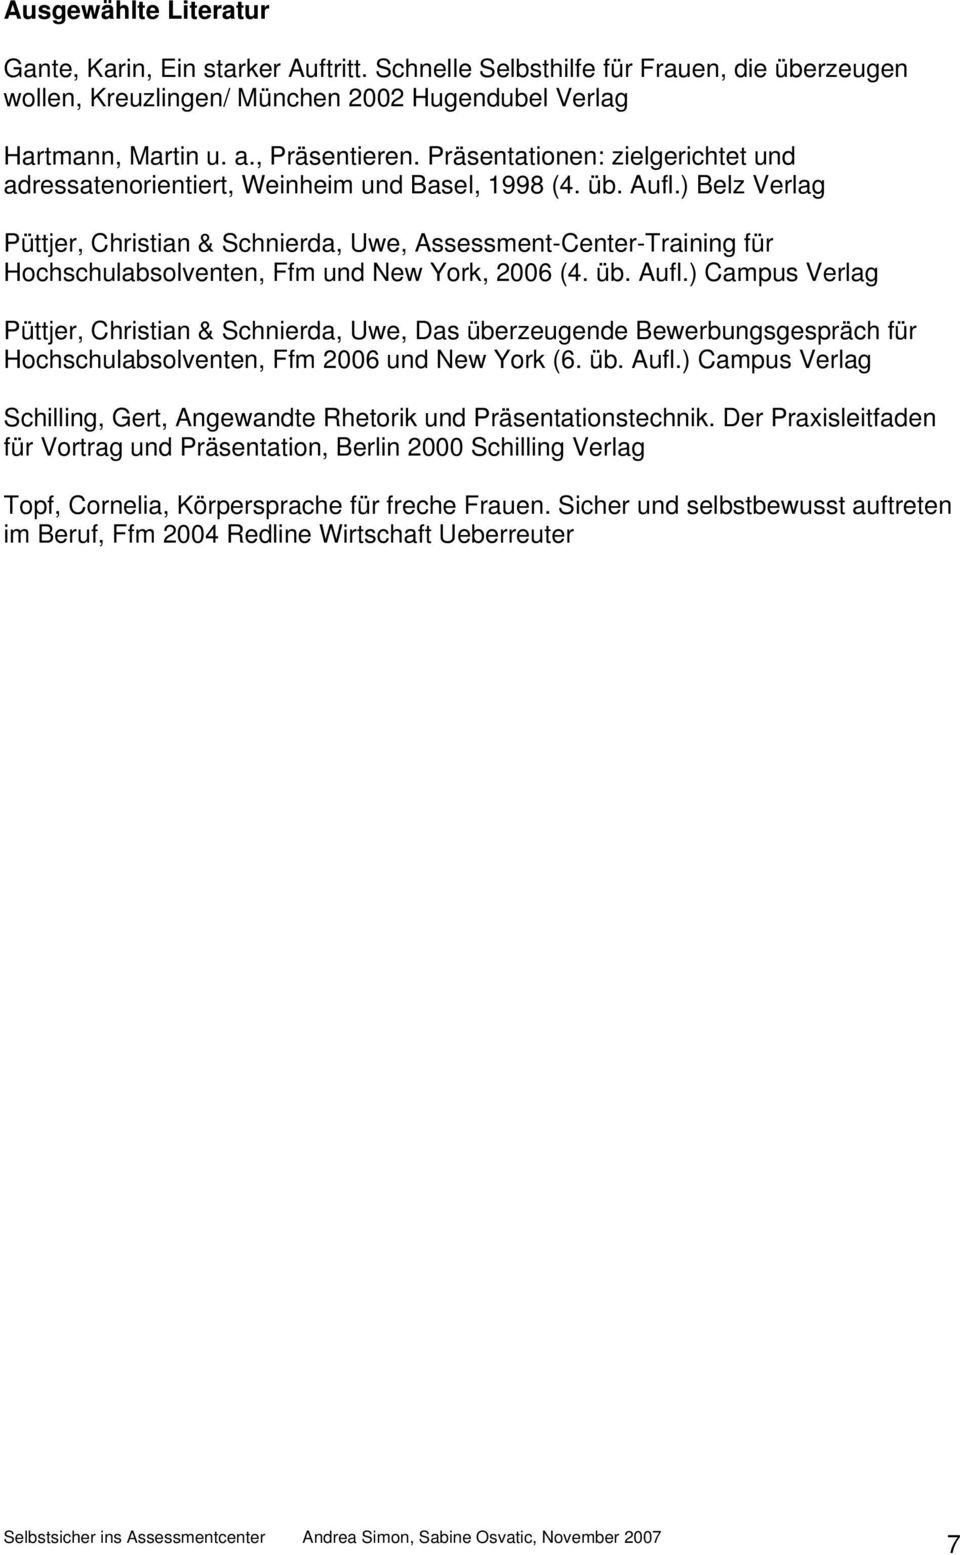 ) Belz Verlag Püttjer, Christian & Schnierda, Uwe, Assessment-Center-Training für Hochschulabsolventen, Ffm und New York, 2006 (4. üb. Aufl.